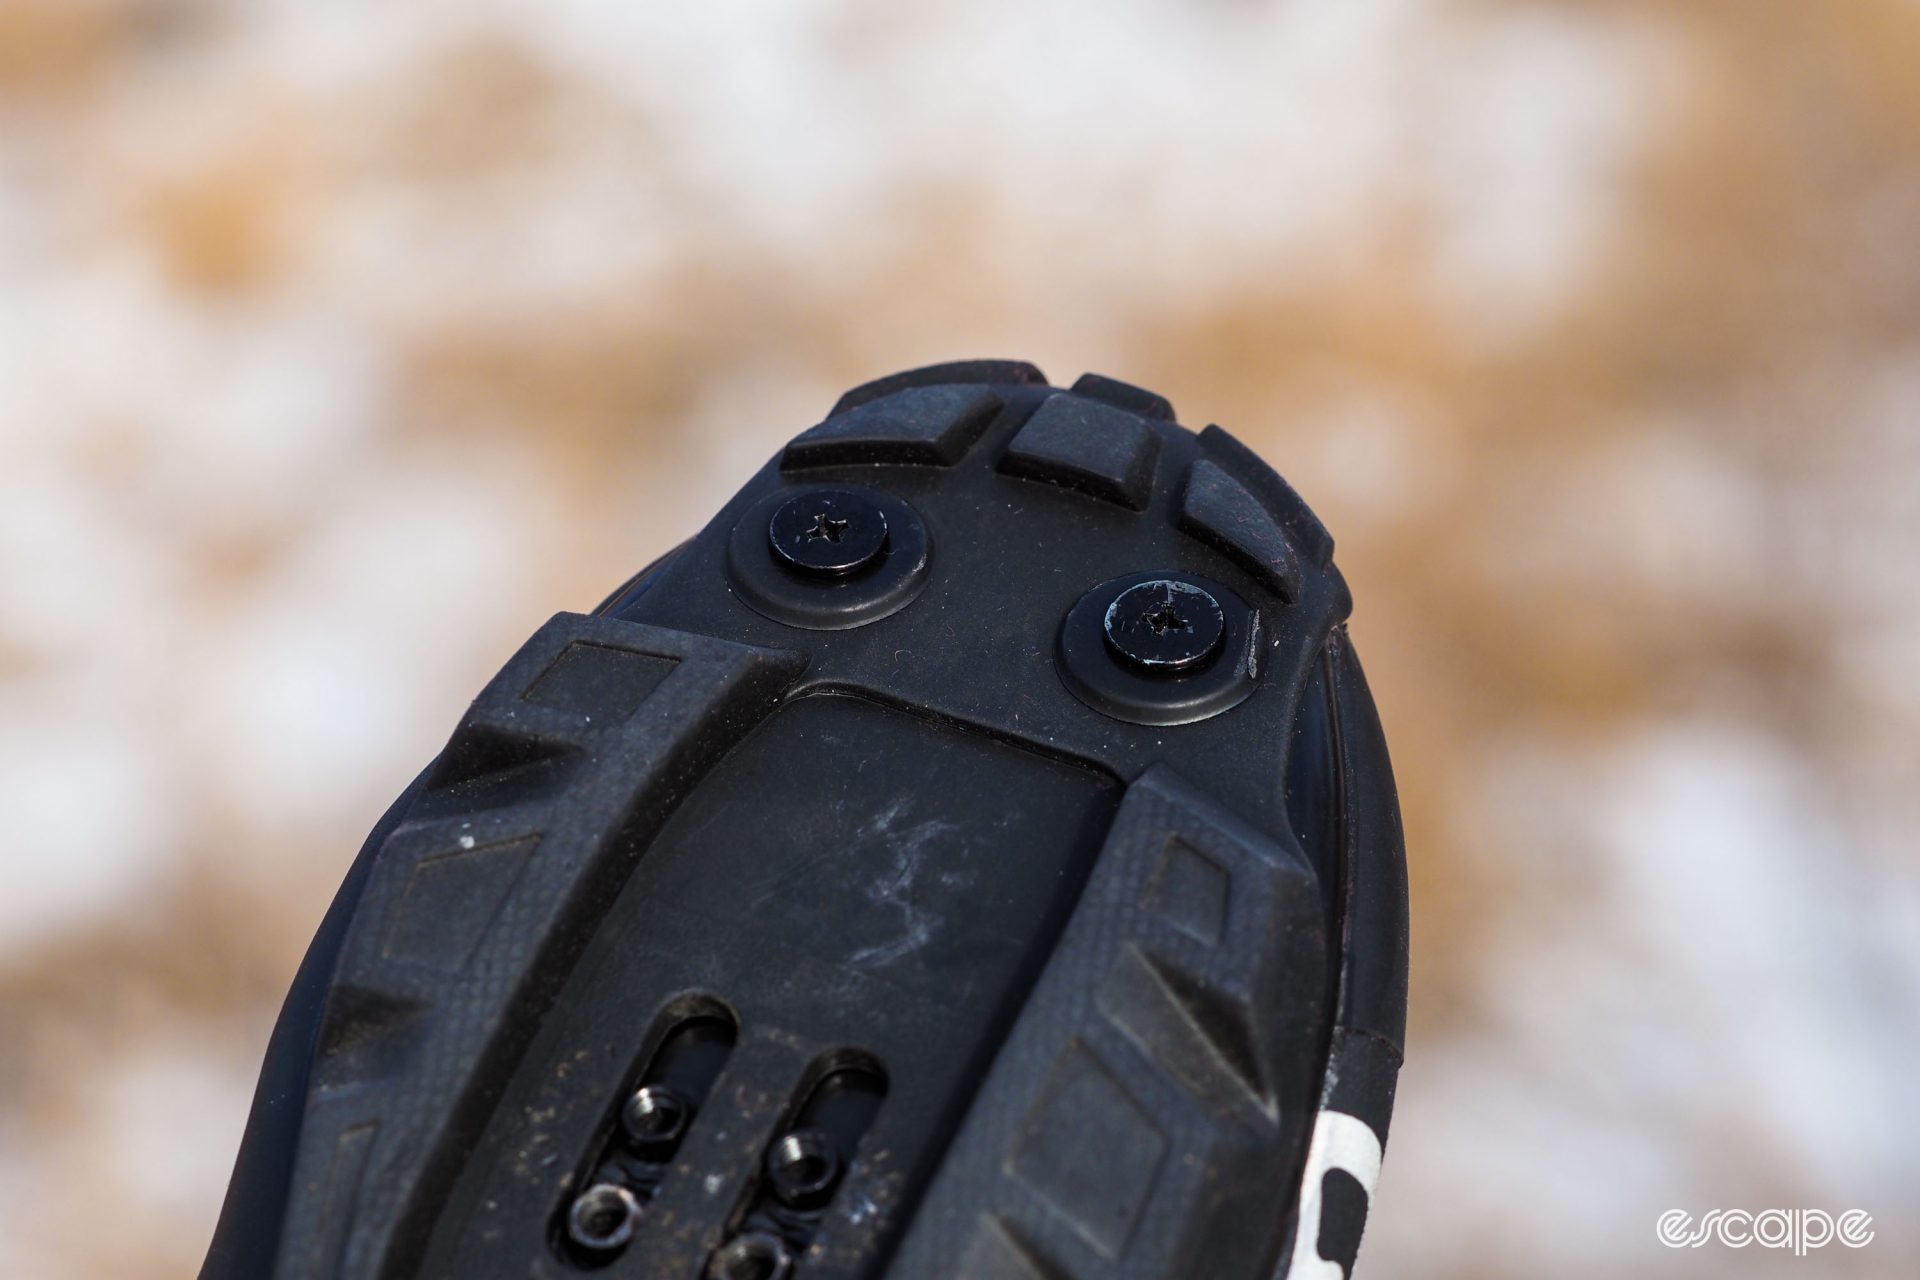 Giro Blaze winter cycling shoe toe spike mounts